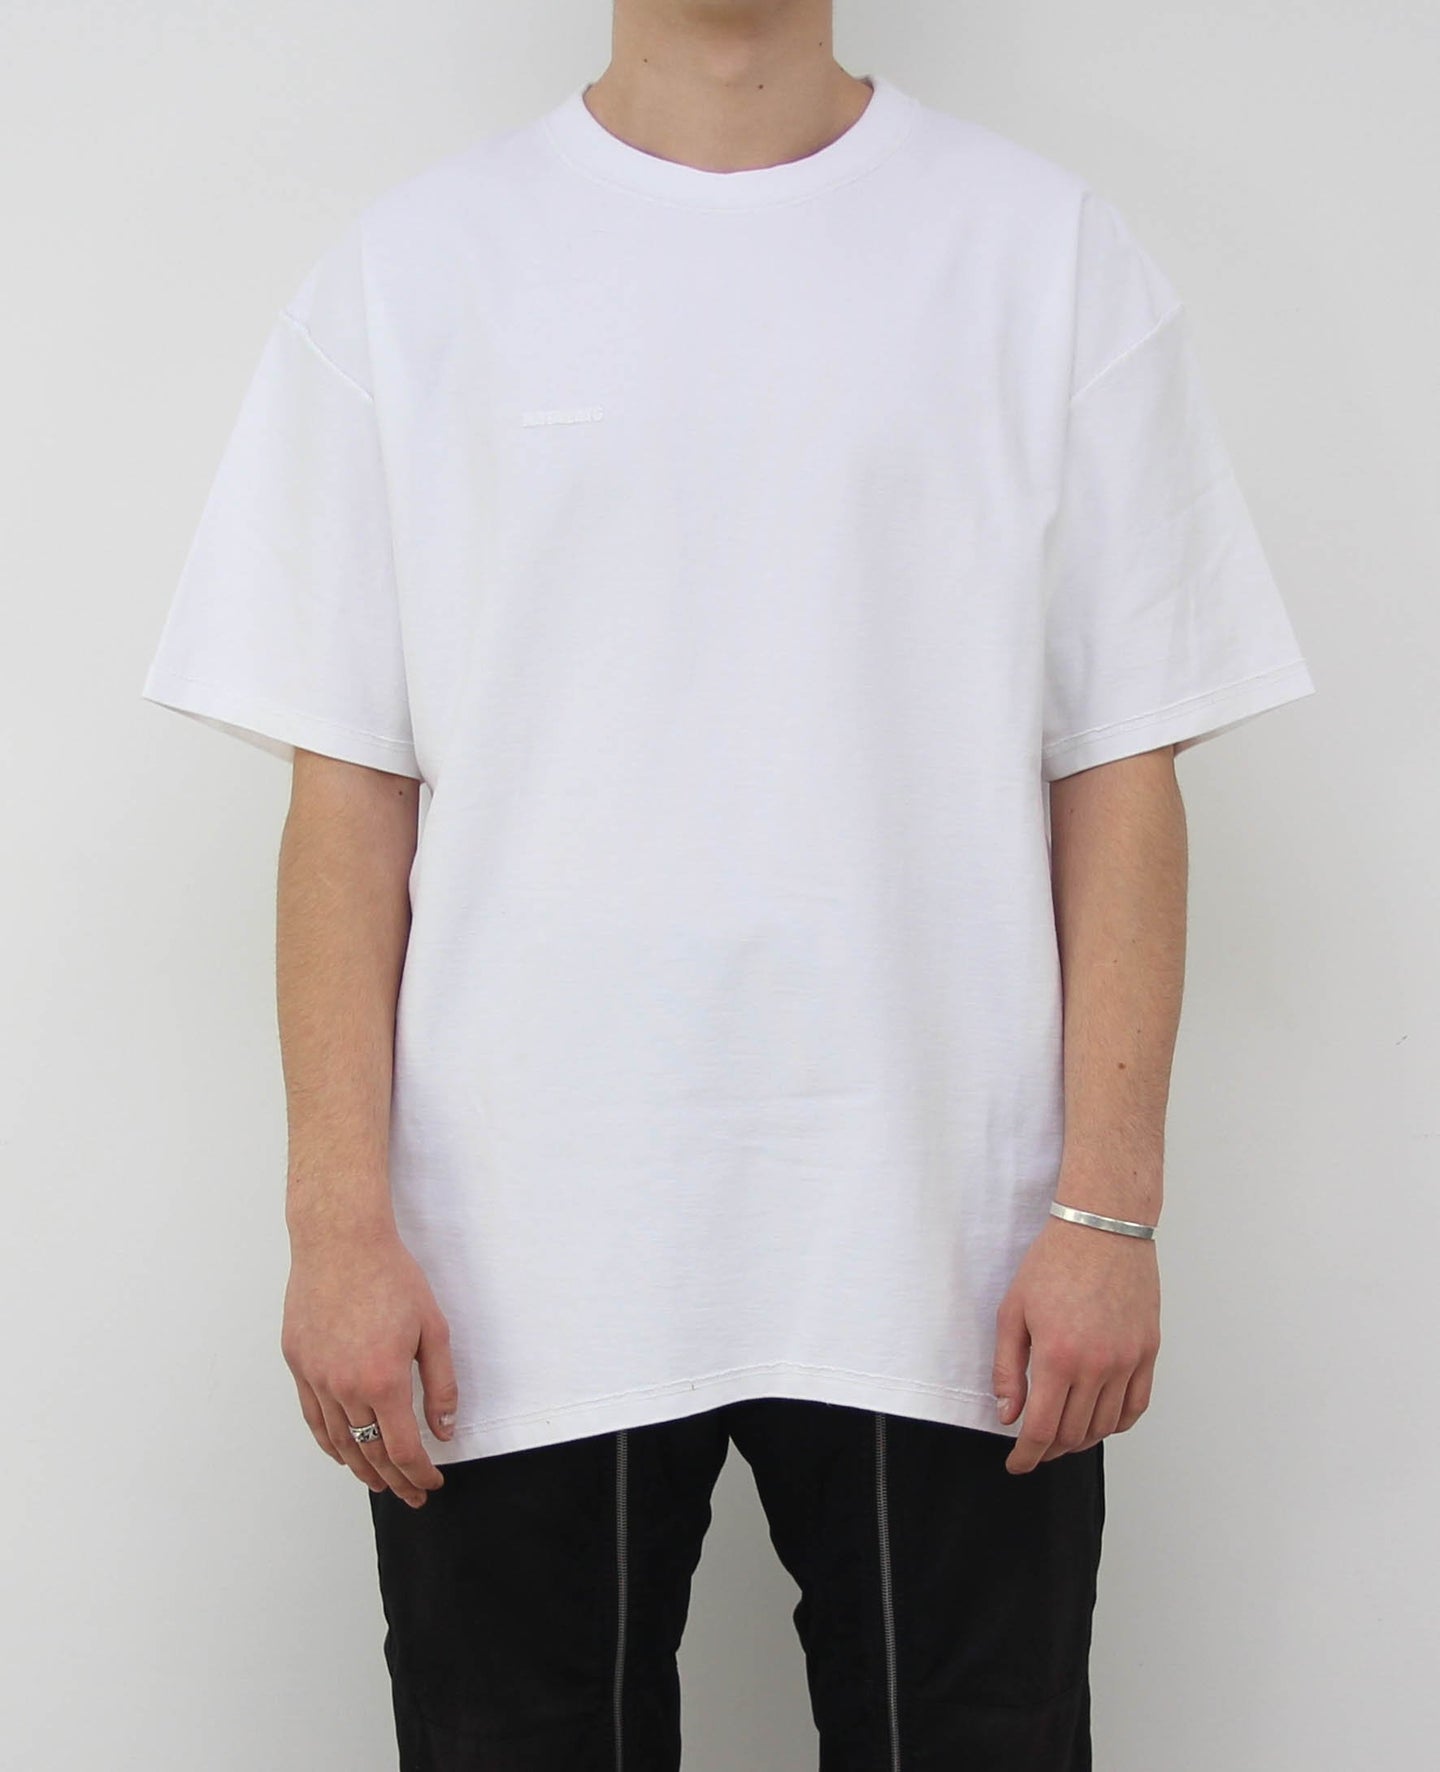 inside-out cotton T-shirt, VETEMENTS